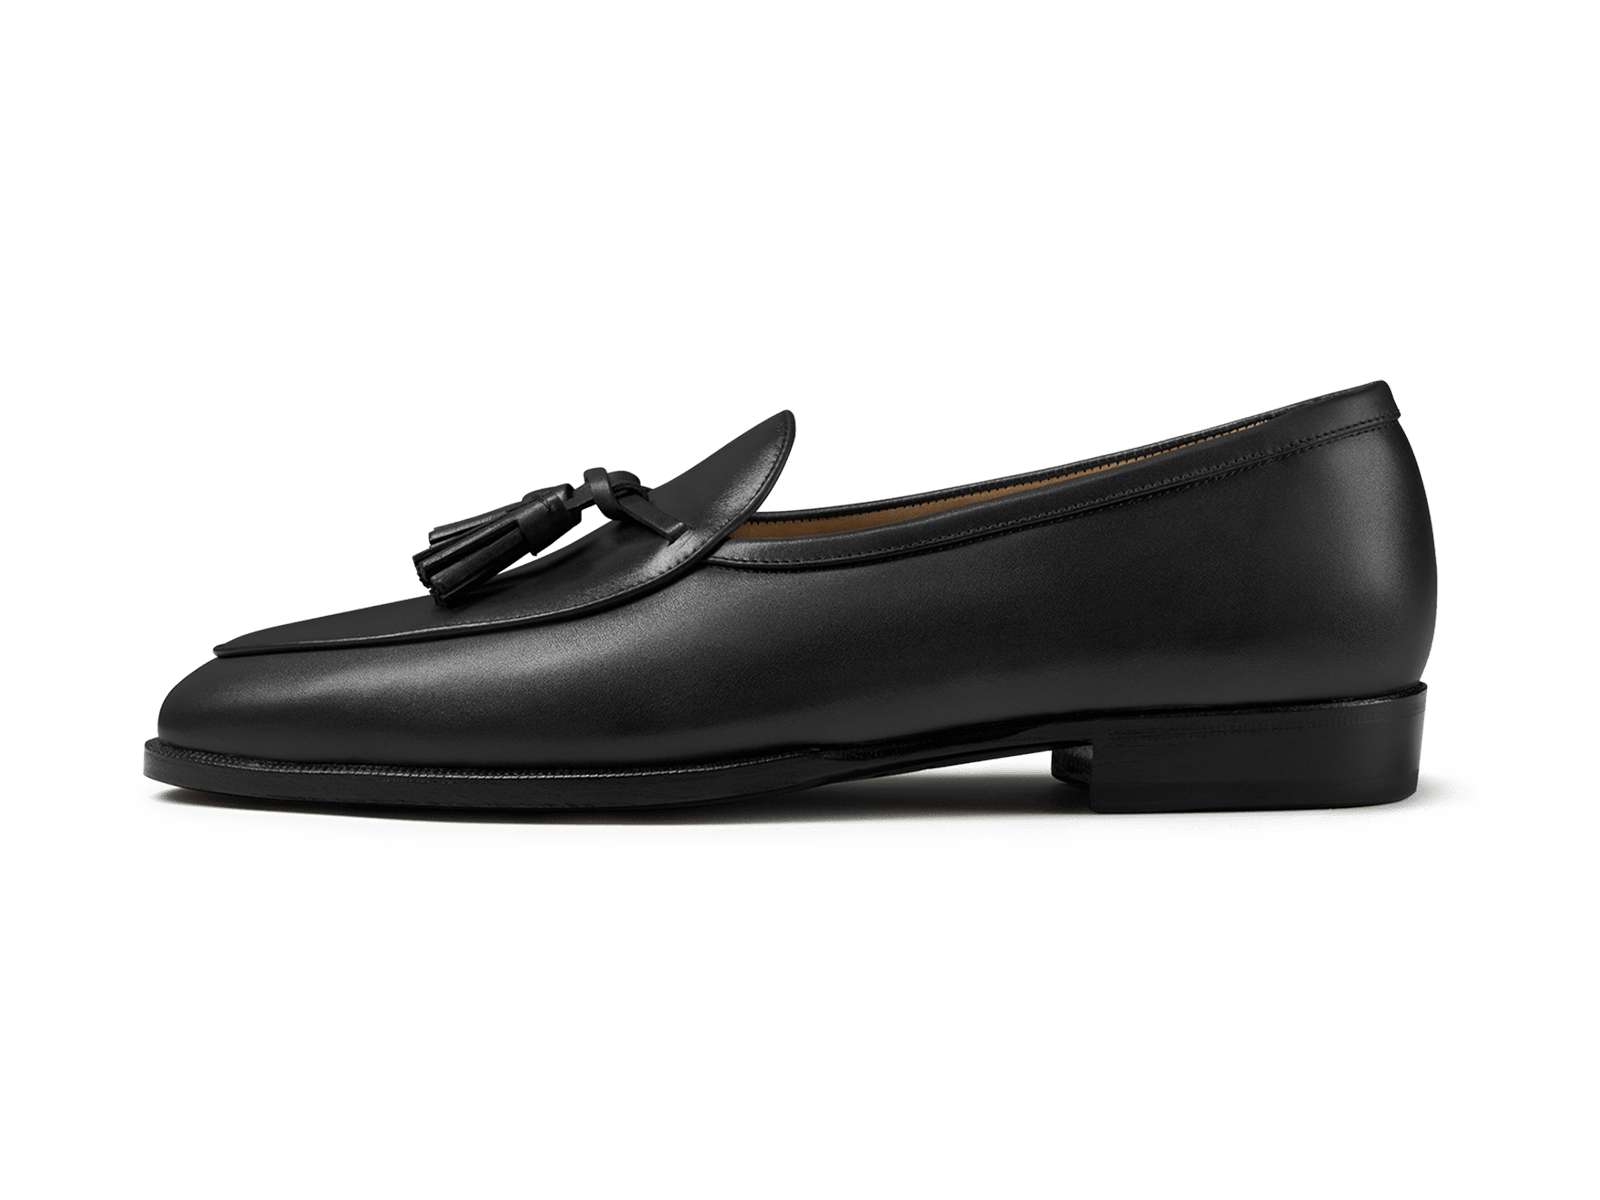 Men's Genuine Leather Loafer Shoes Slip On Soft Algeria